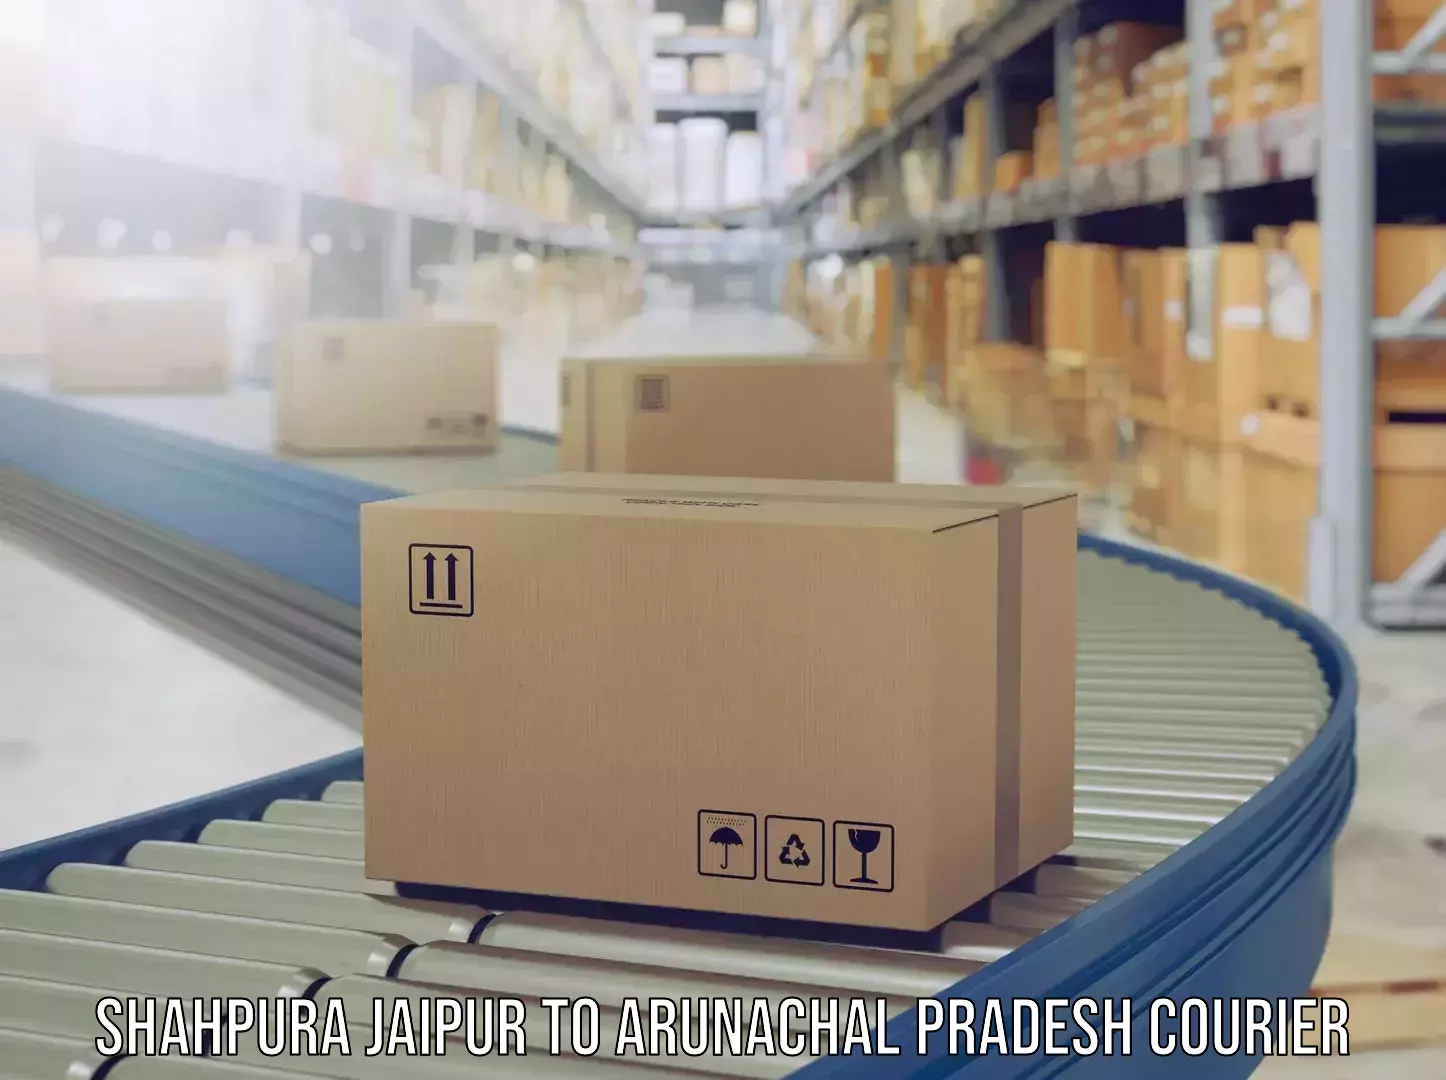 Luggage delivery optimization Shahpura Jaipur to Nirjuli